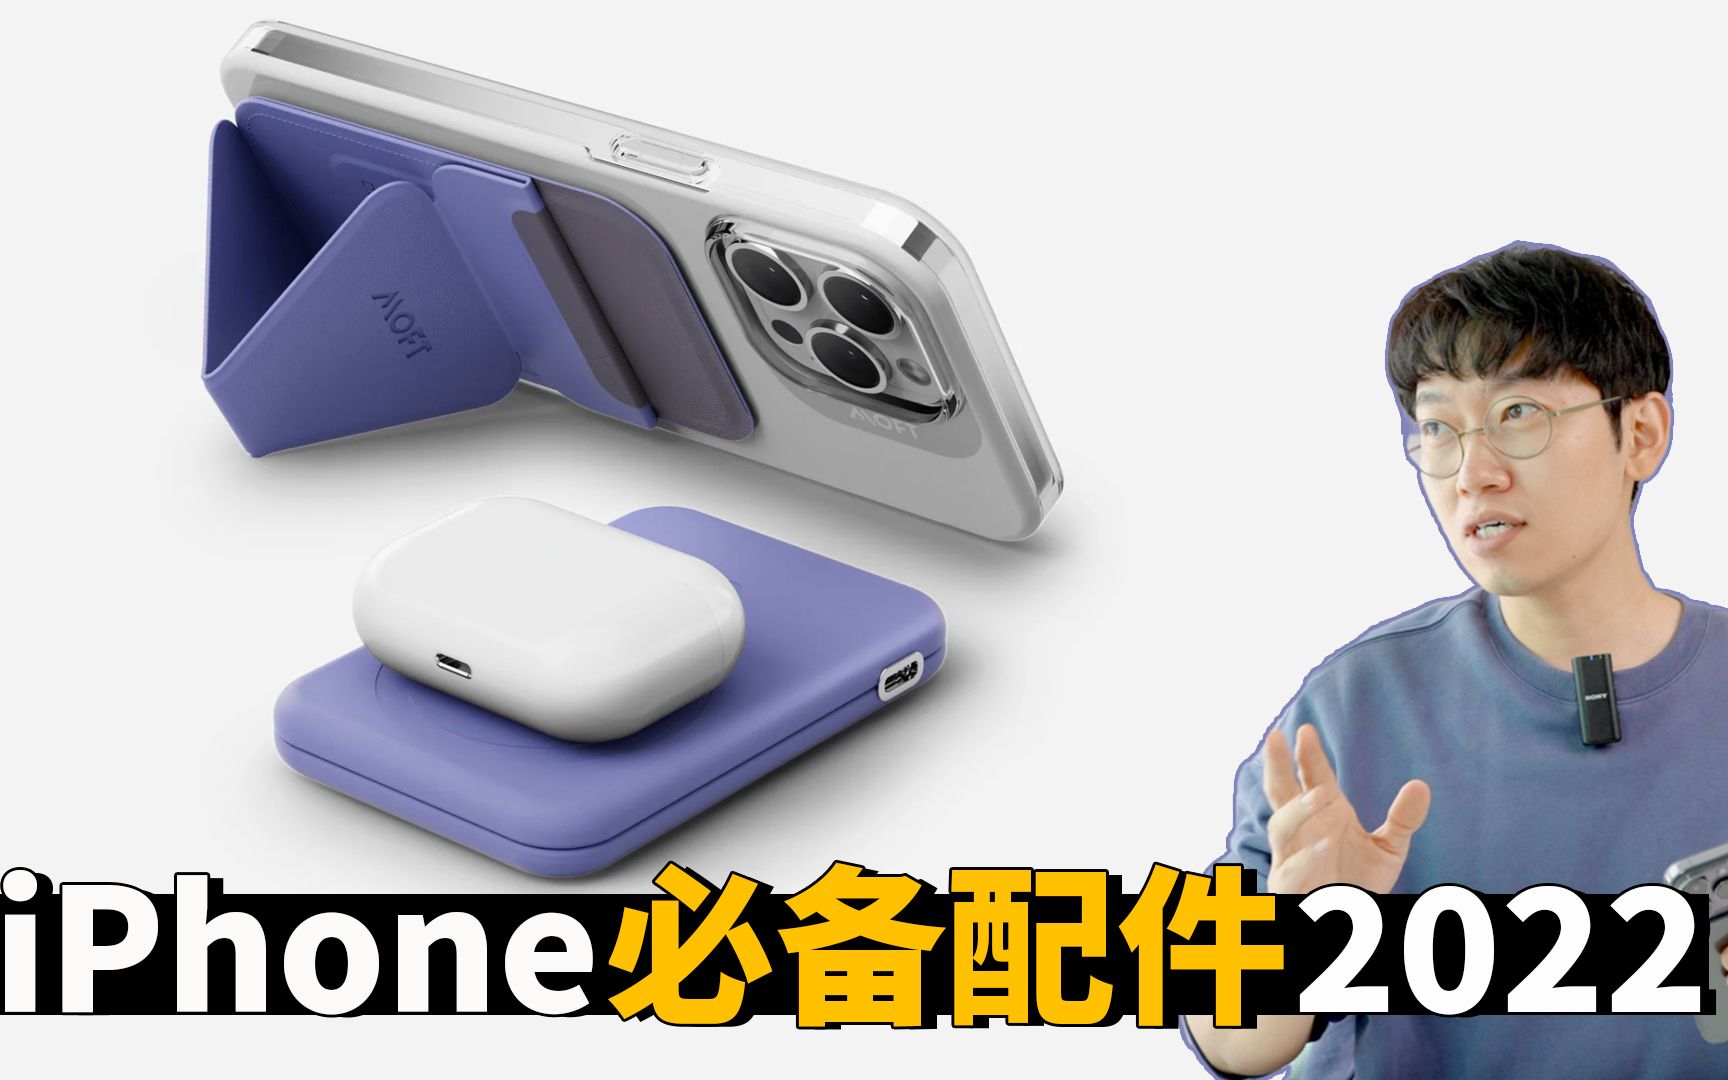 8款2022年iPhone用户必备的配件! feat. MagSafe/移动电源/手机壳/保护膜/特斯拉支架 | 大耳朵TV